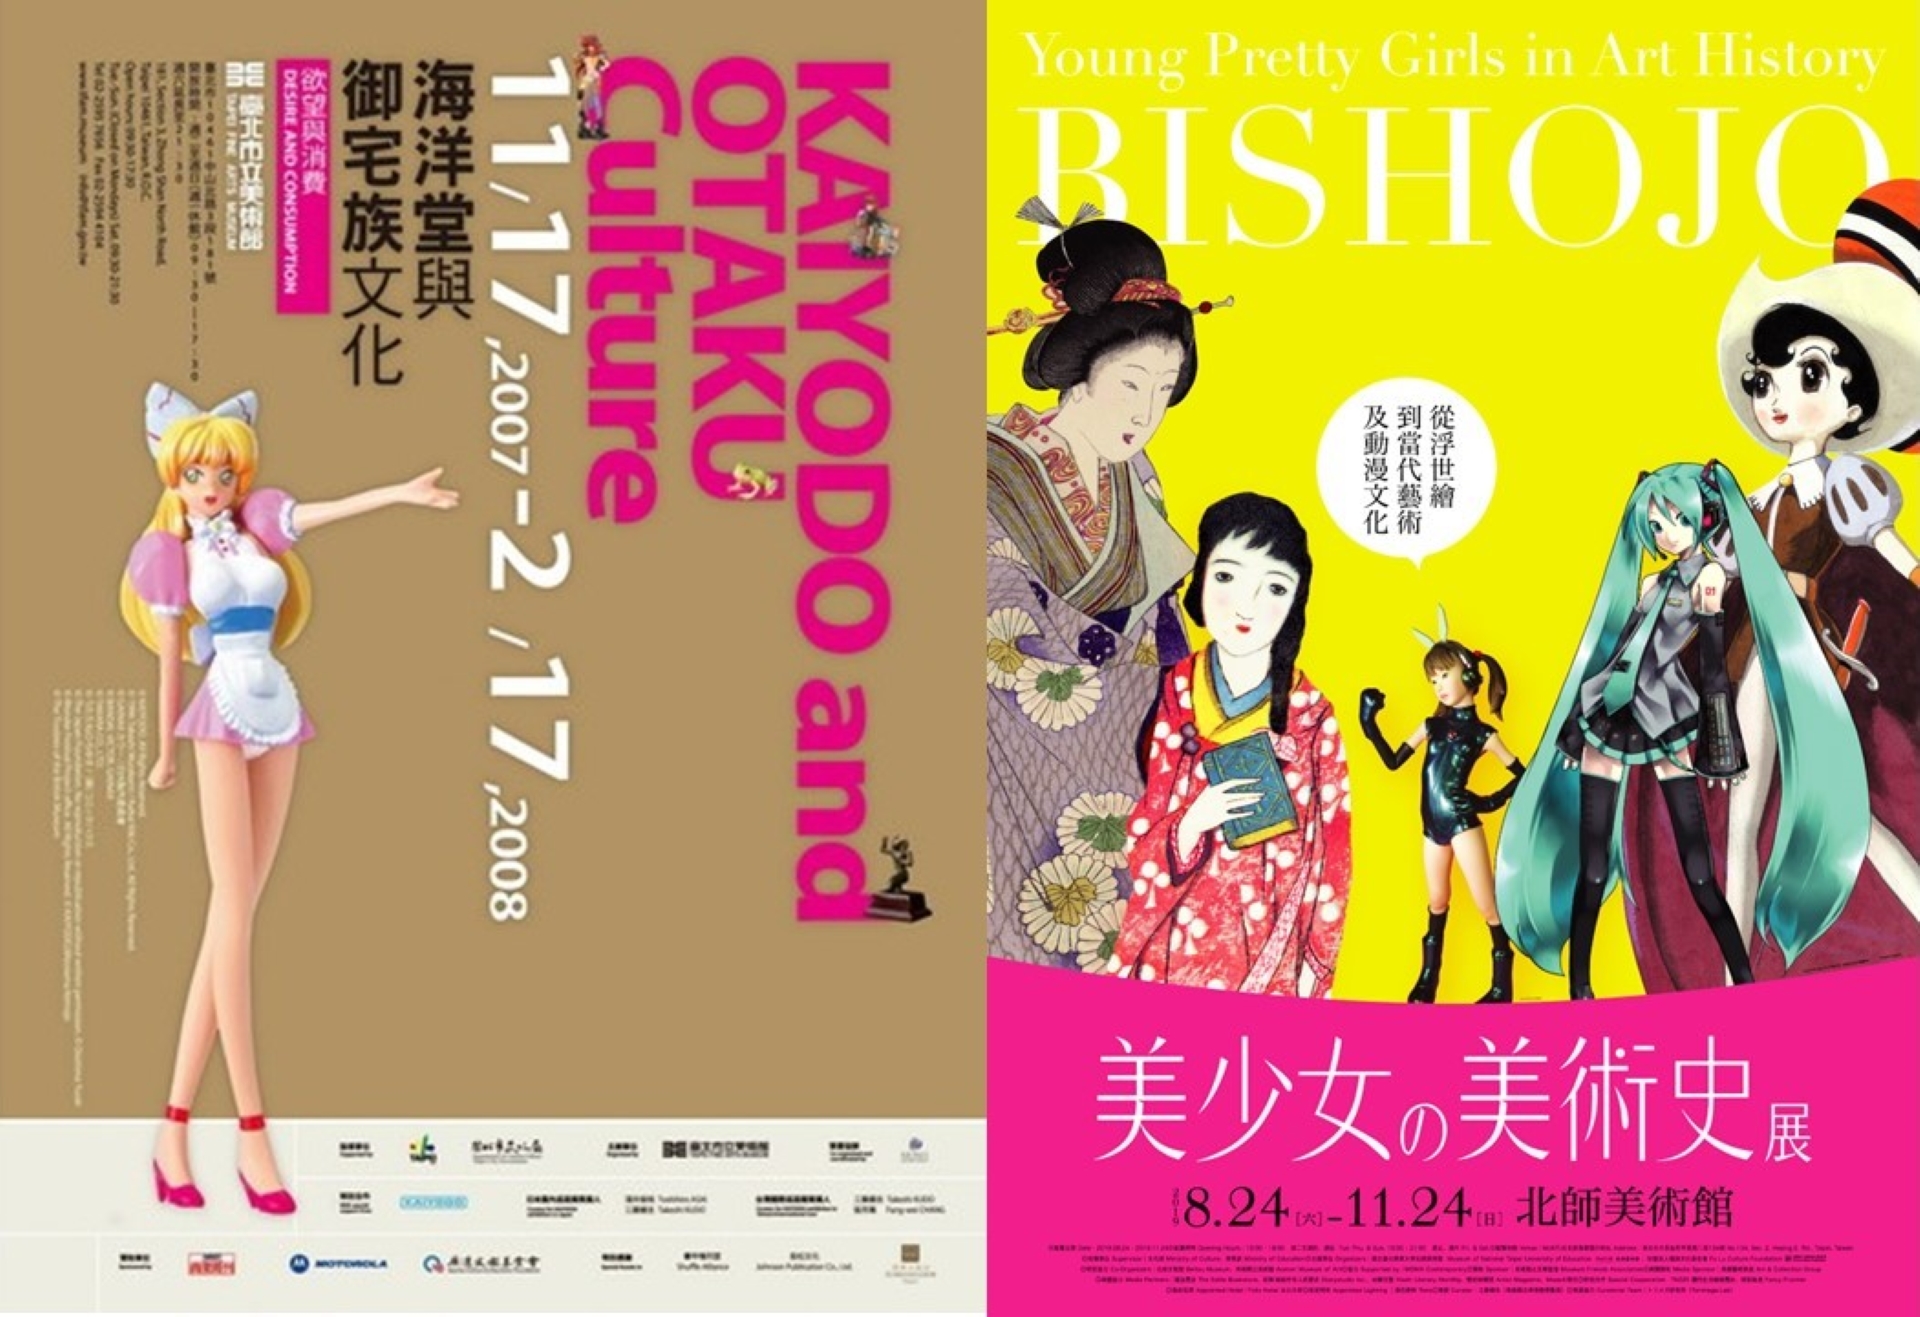 左）臺北市立美術館於2007年所舉辦之「欲望與消費－海洋堂與御宅族文化」展覽。（翻攝網路）
（右）北師美術館於2019年所舉辦之「美少女の美術史」展覽。（北師美術館提供）